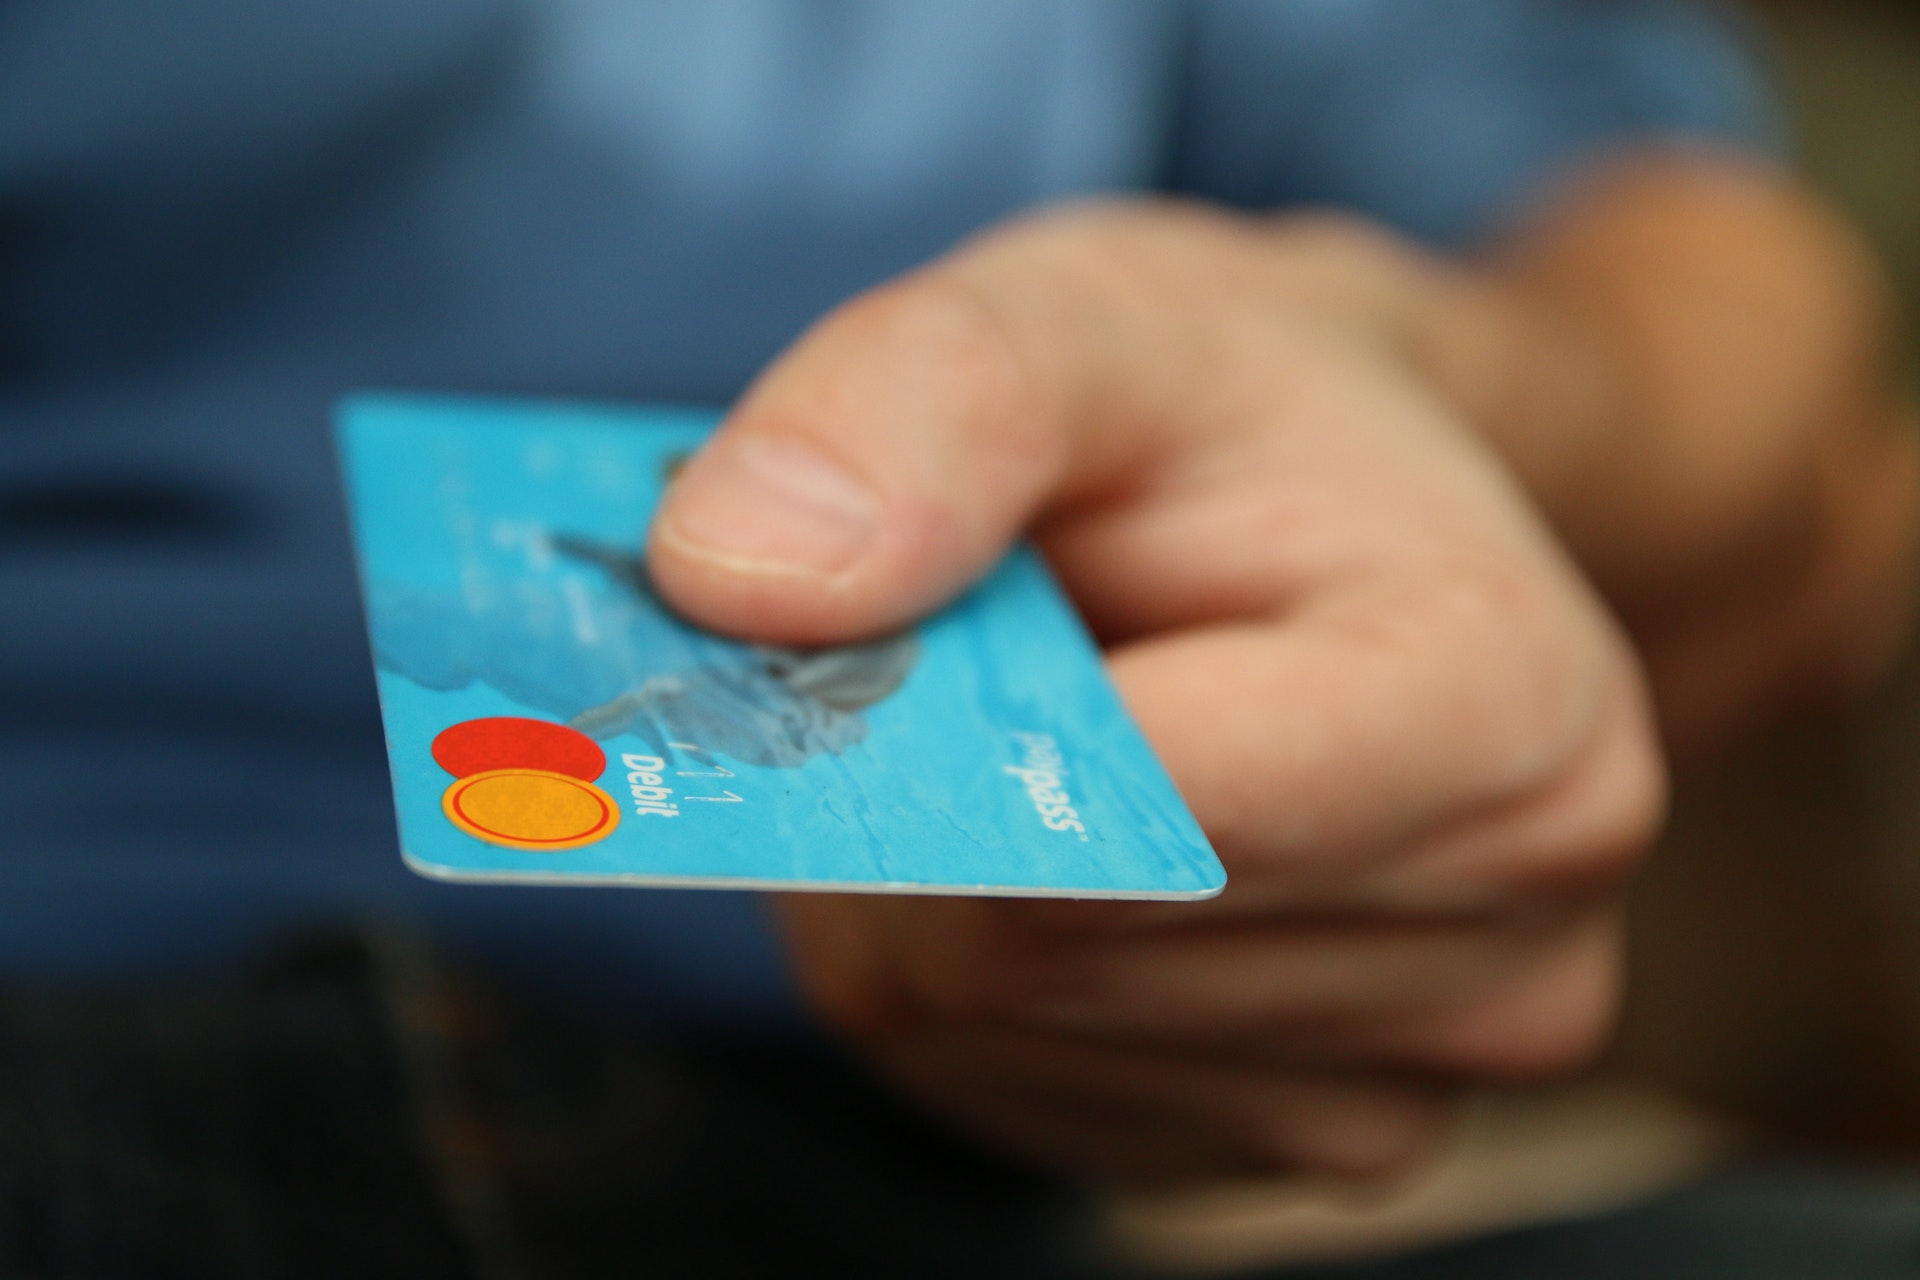 Hand offering up a blue debit card